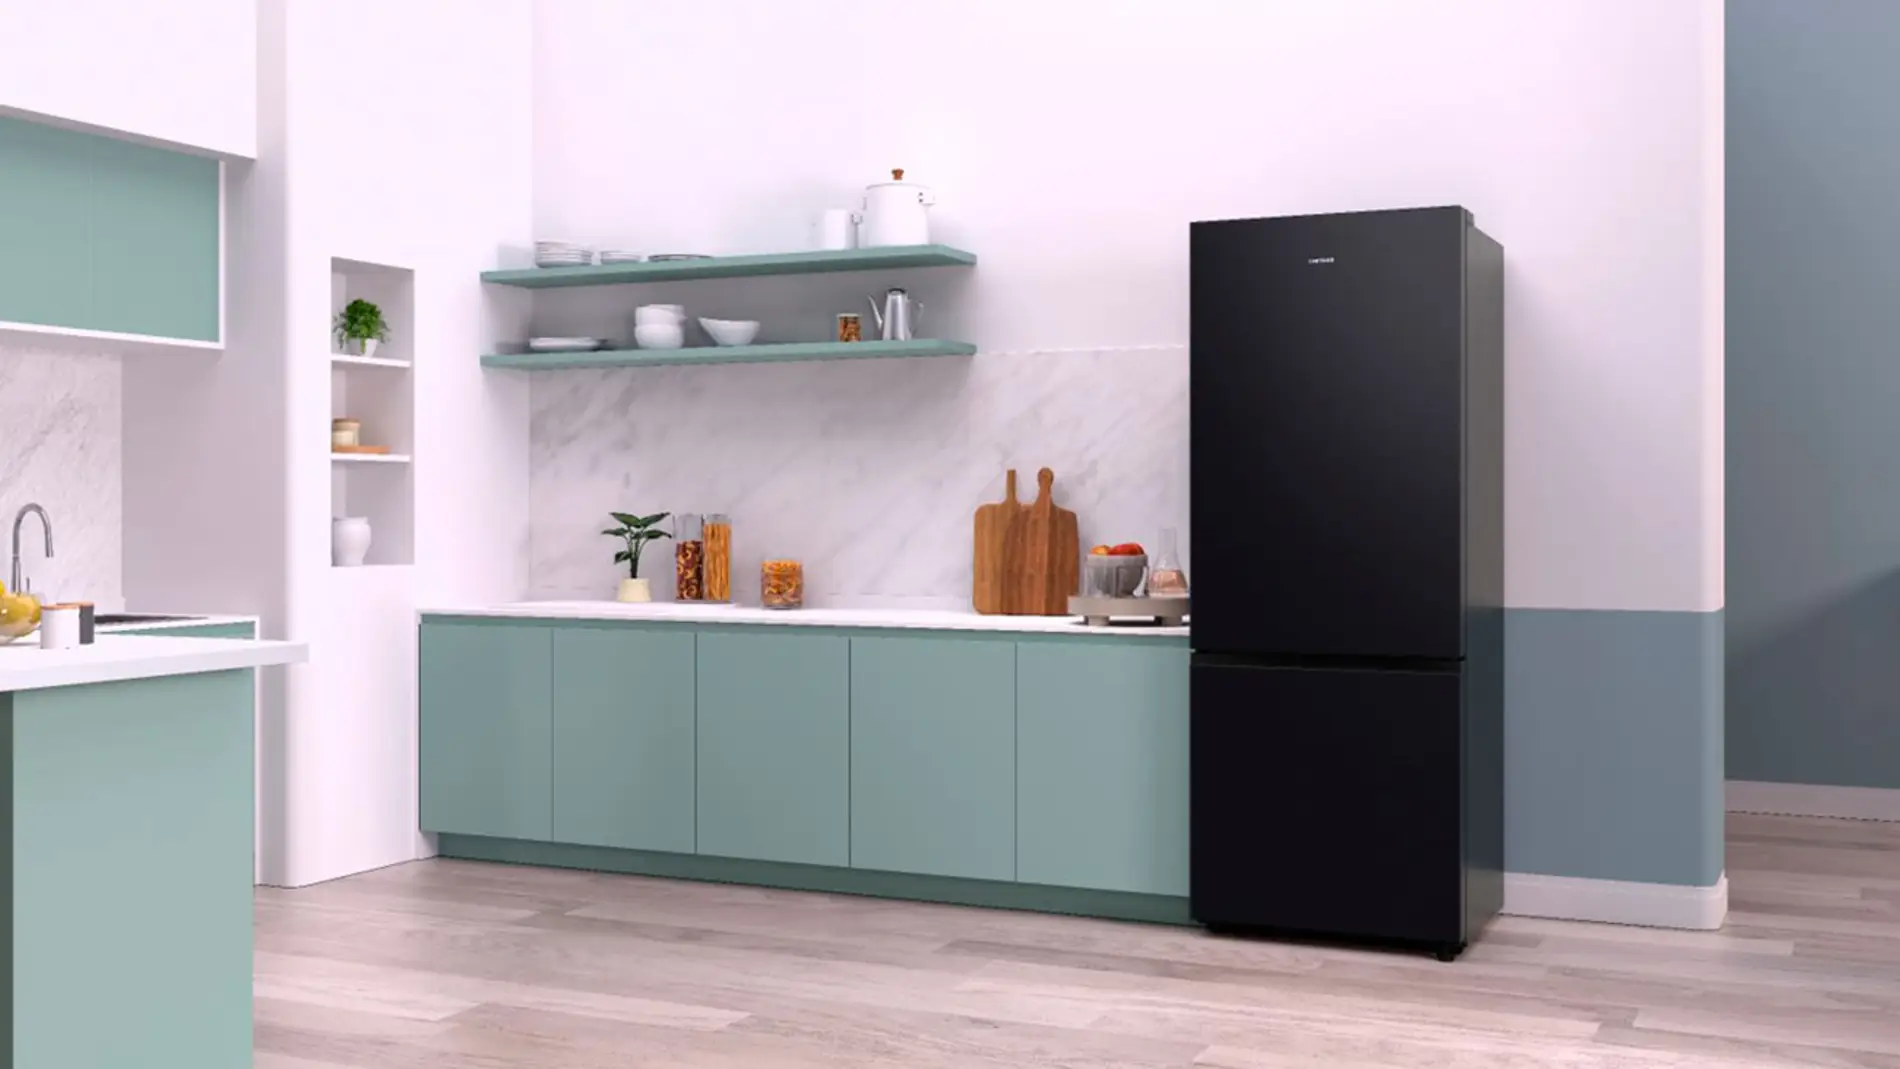 El nuevo frigorífico compatible con SmartThings